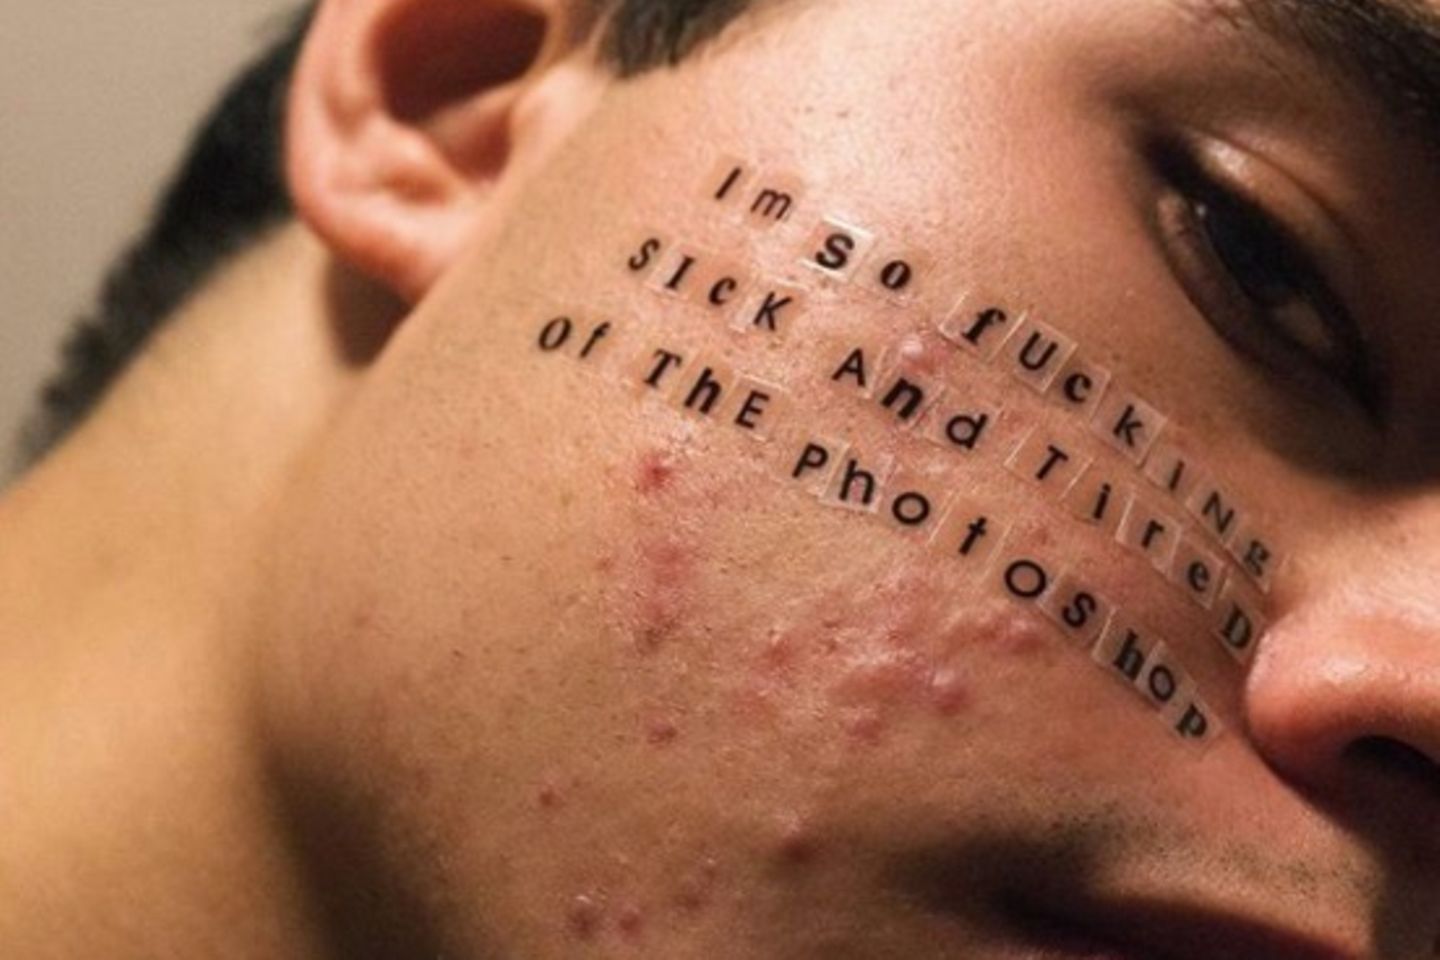 Mann mit Akne und Anti-Photoshopschrift